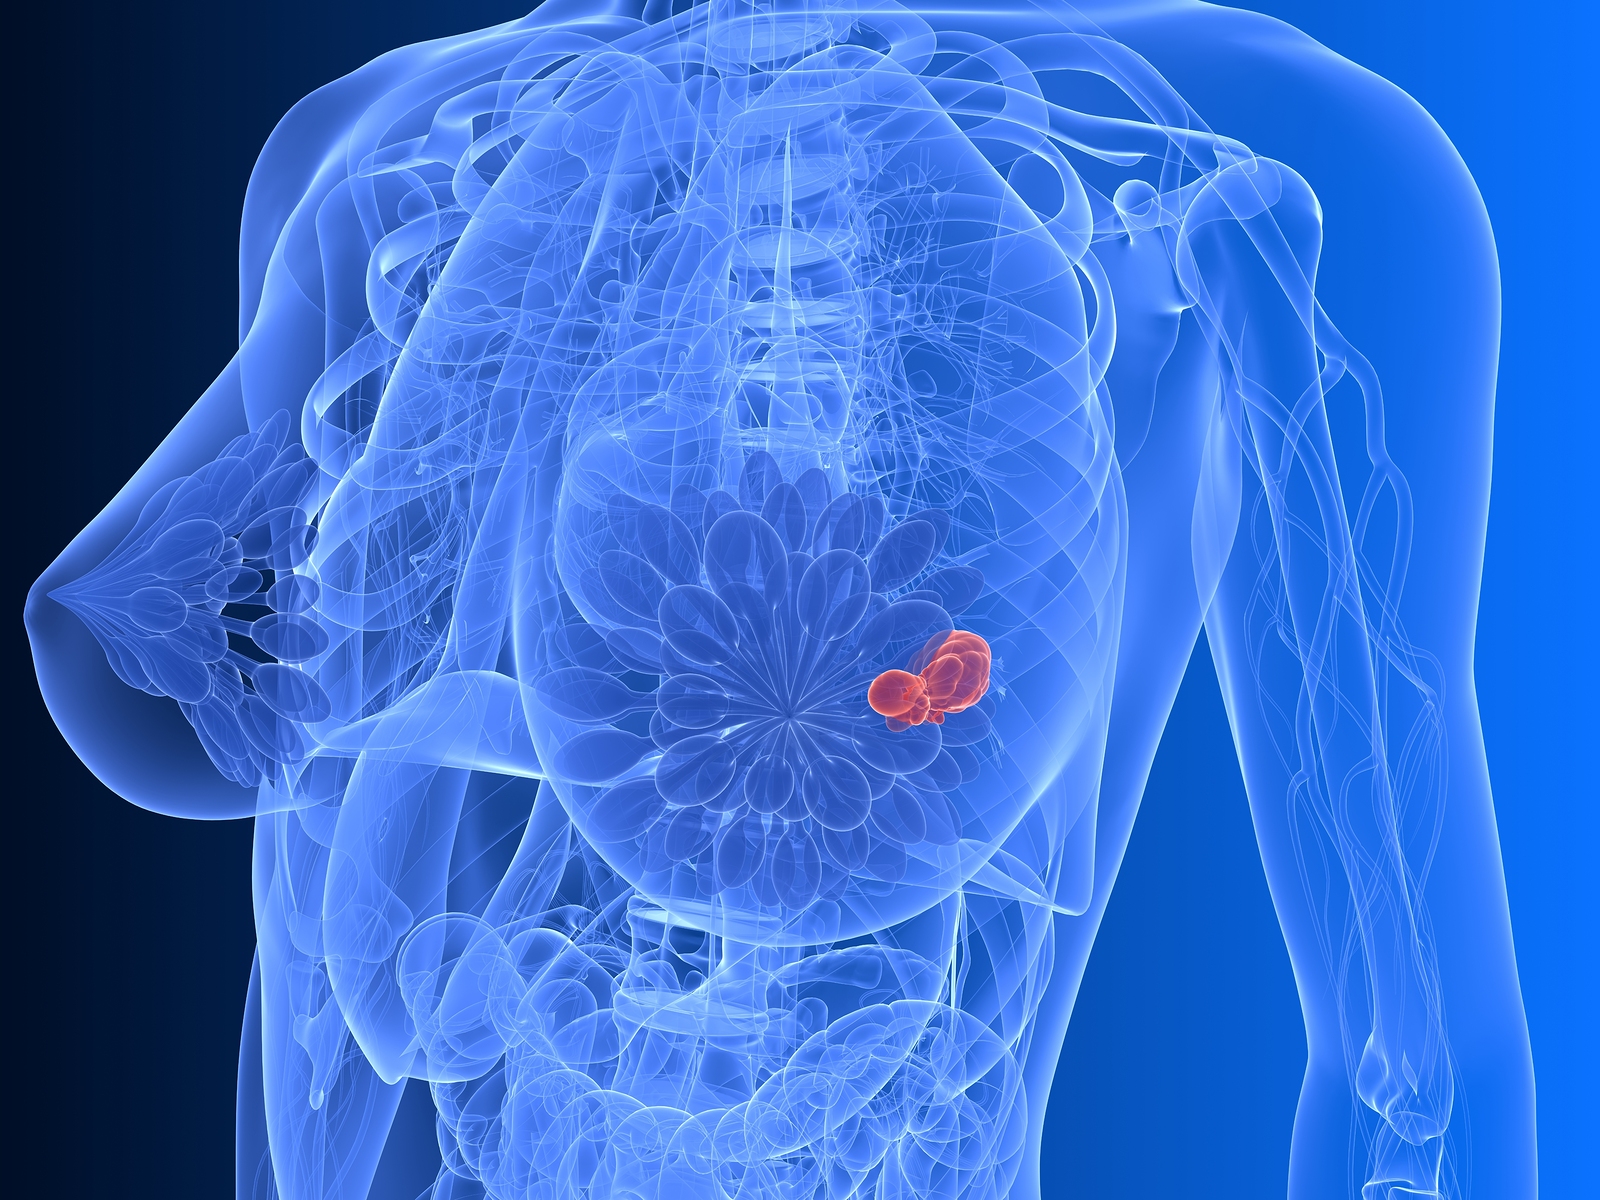 A mellrák tünete lehet a mell bőrének és a mellbimbó elváltozása is